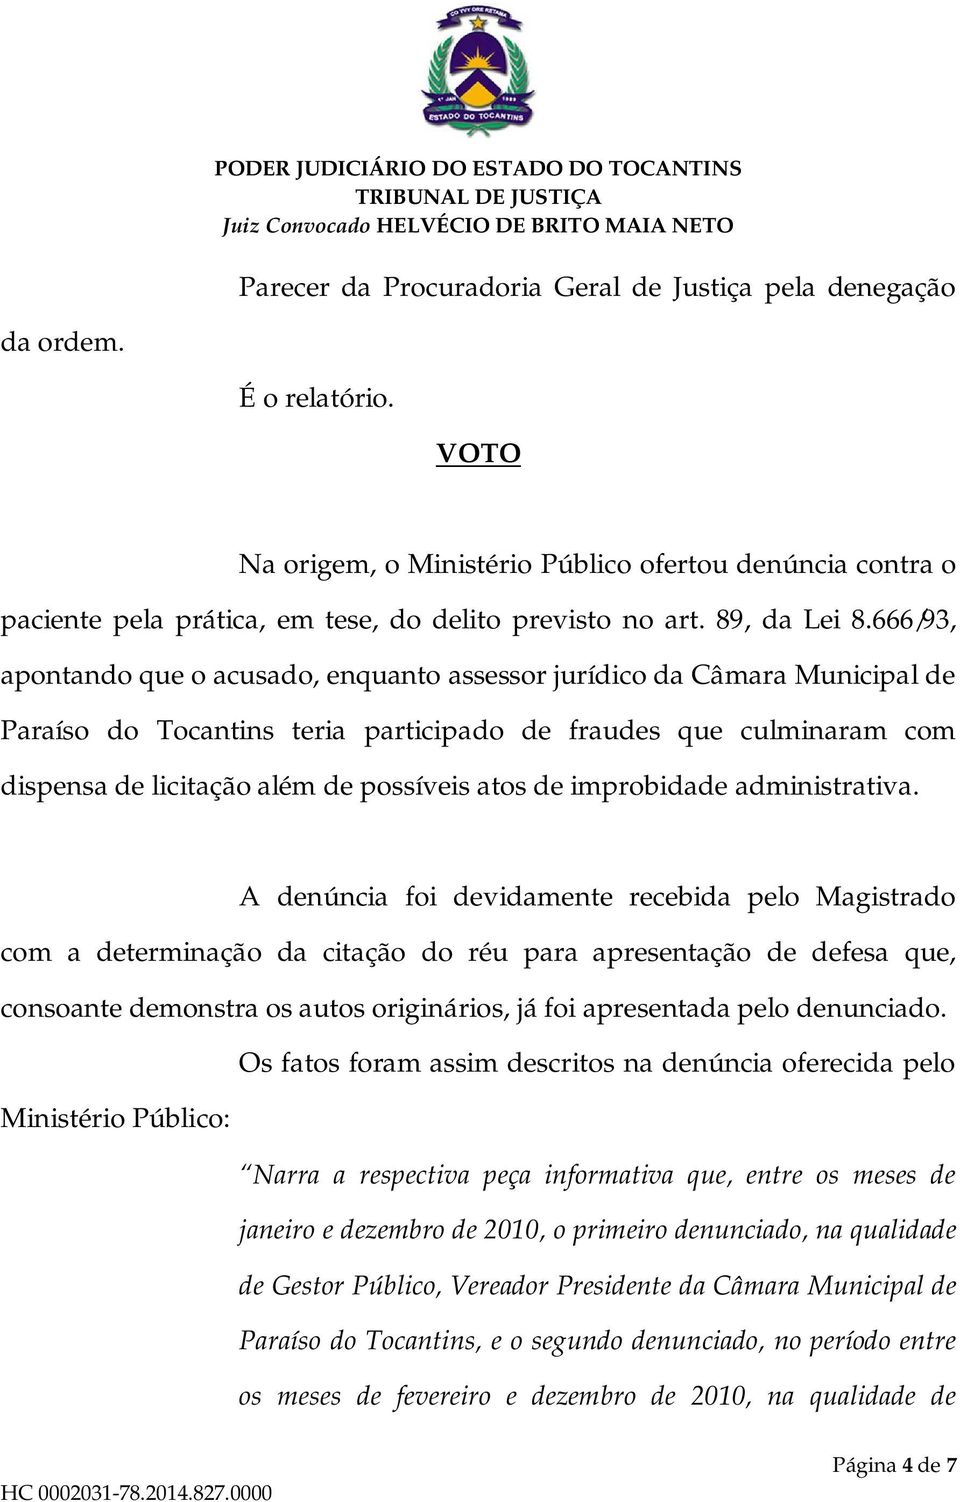 666/93, apontando que o acusado, enquanto assessor jurídico da Câmara Municipal de Paraíso do Tocantins teria participado de fraudes que culminaram com dispensa de licitação além de possíveis atos de